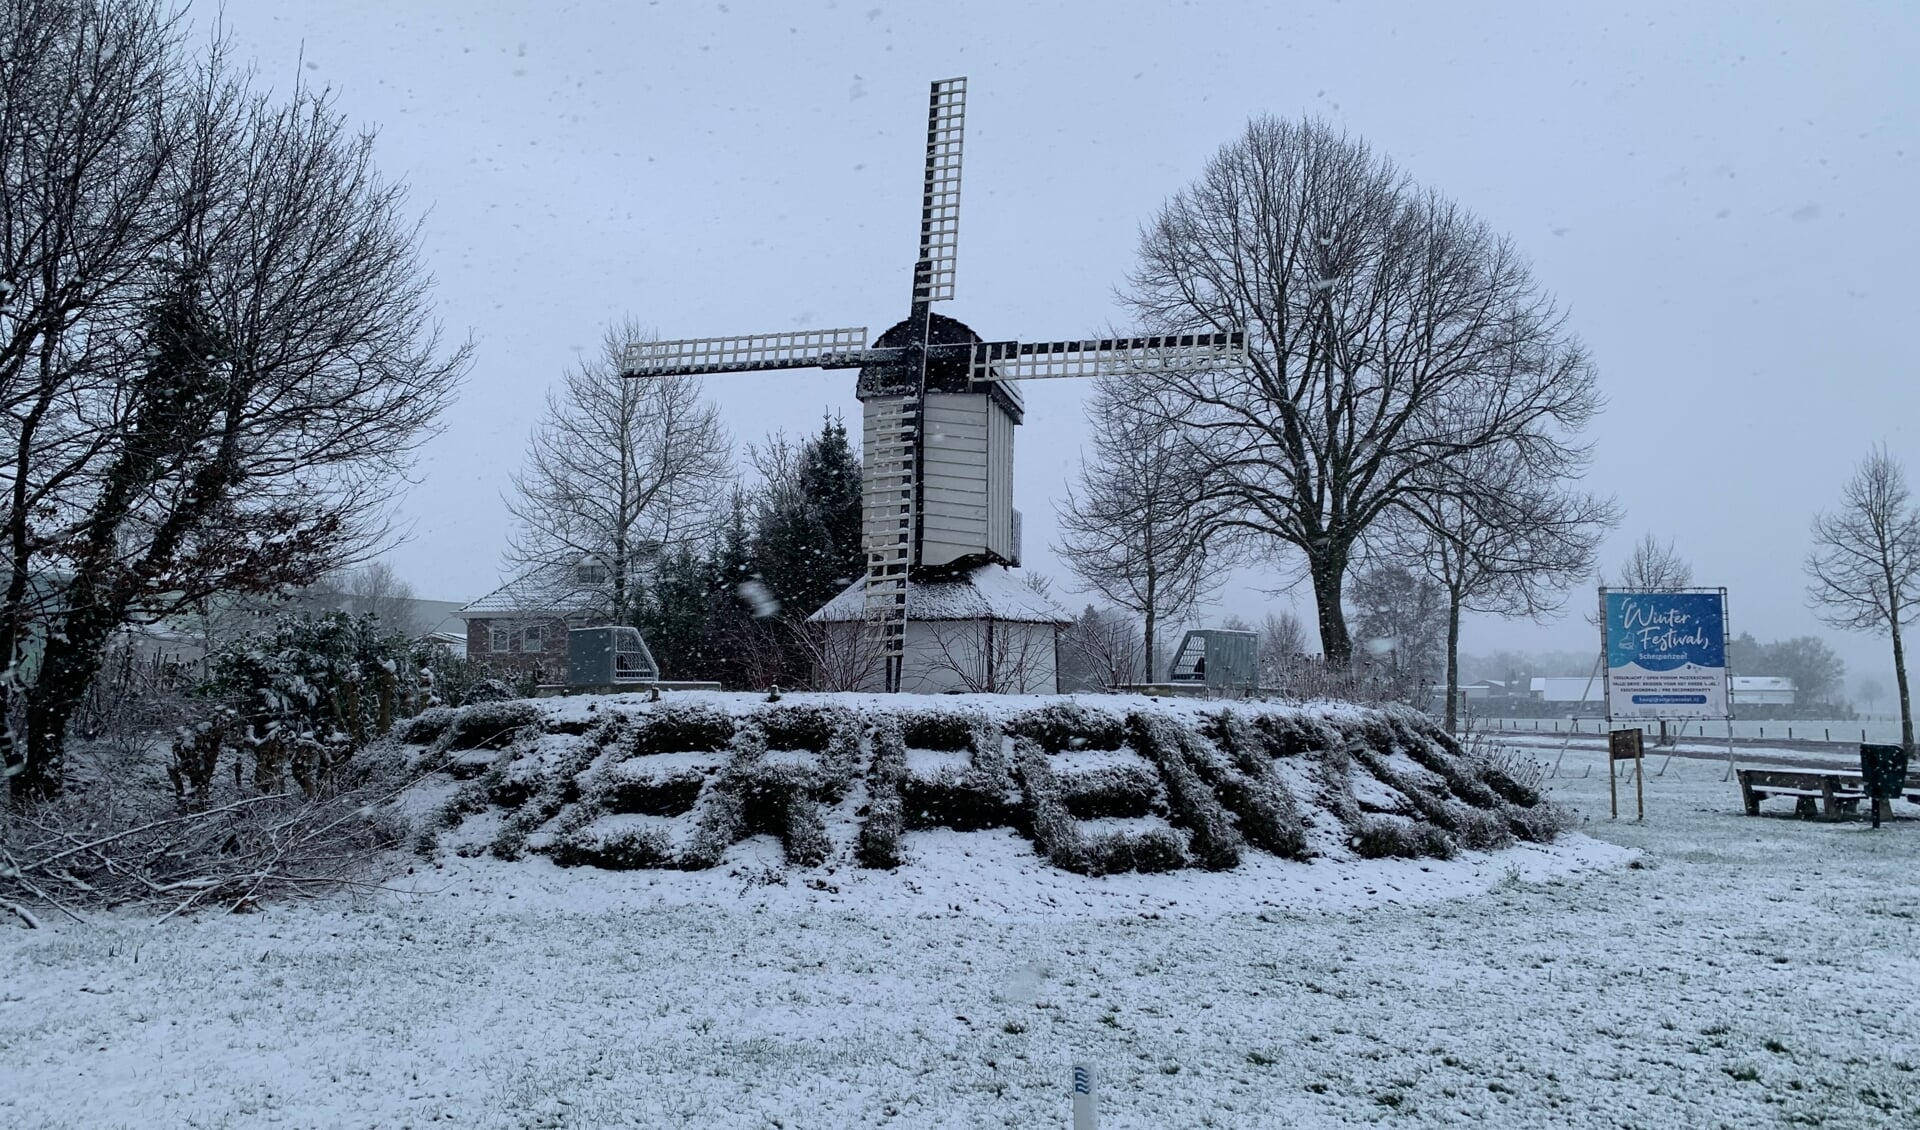 De blikvanger van Scherpenzeel, de replica van de standerdmolen, stond vanochtend in een sneeuwwit landschap.